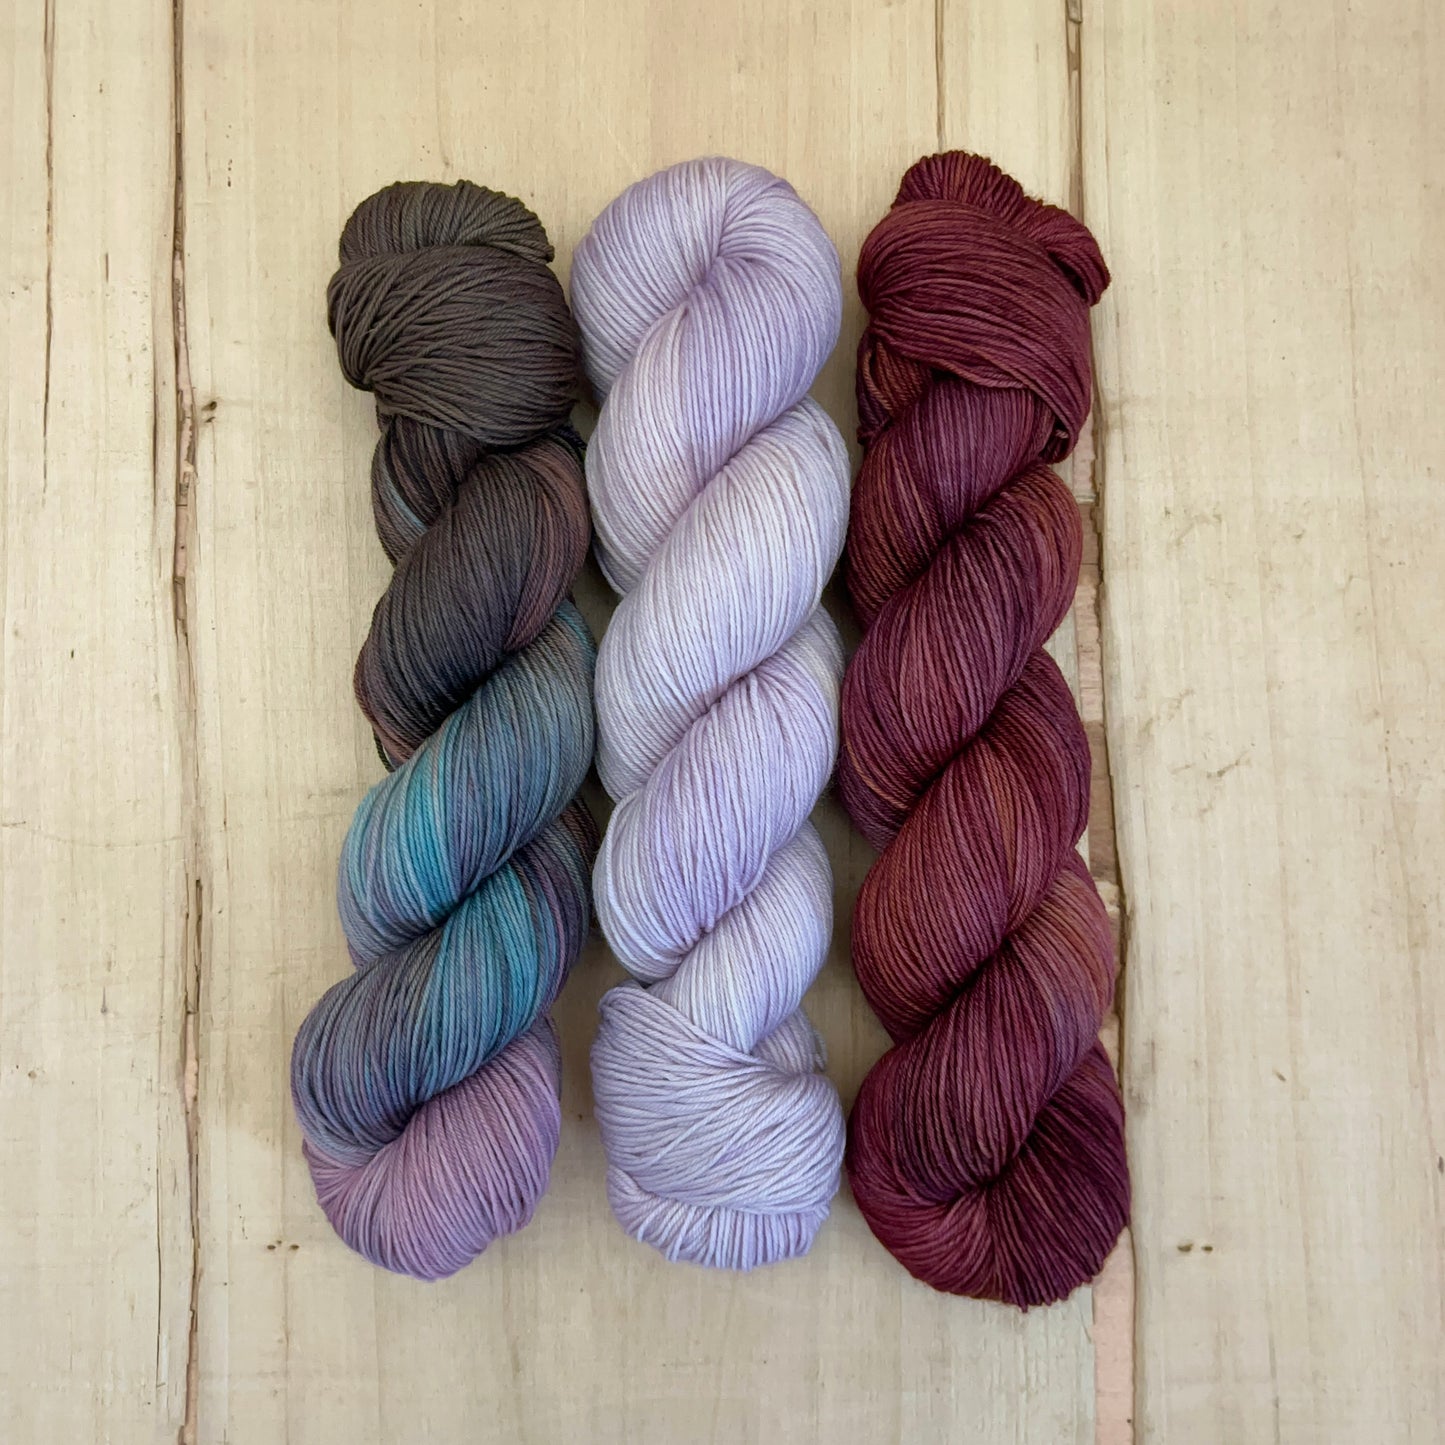 westknits - fiber fest shawl - pightle fingering/4ply - yarn pack #4